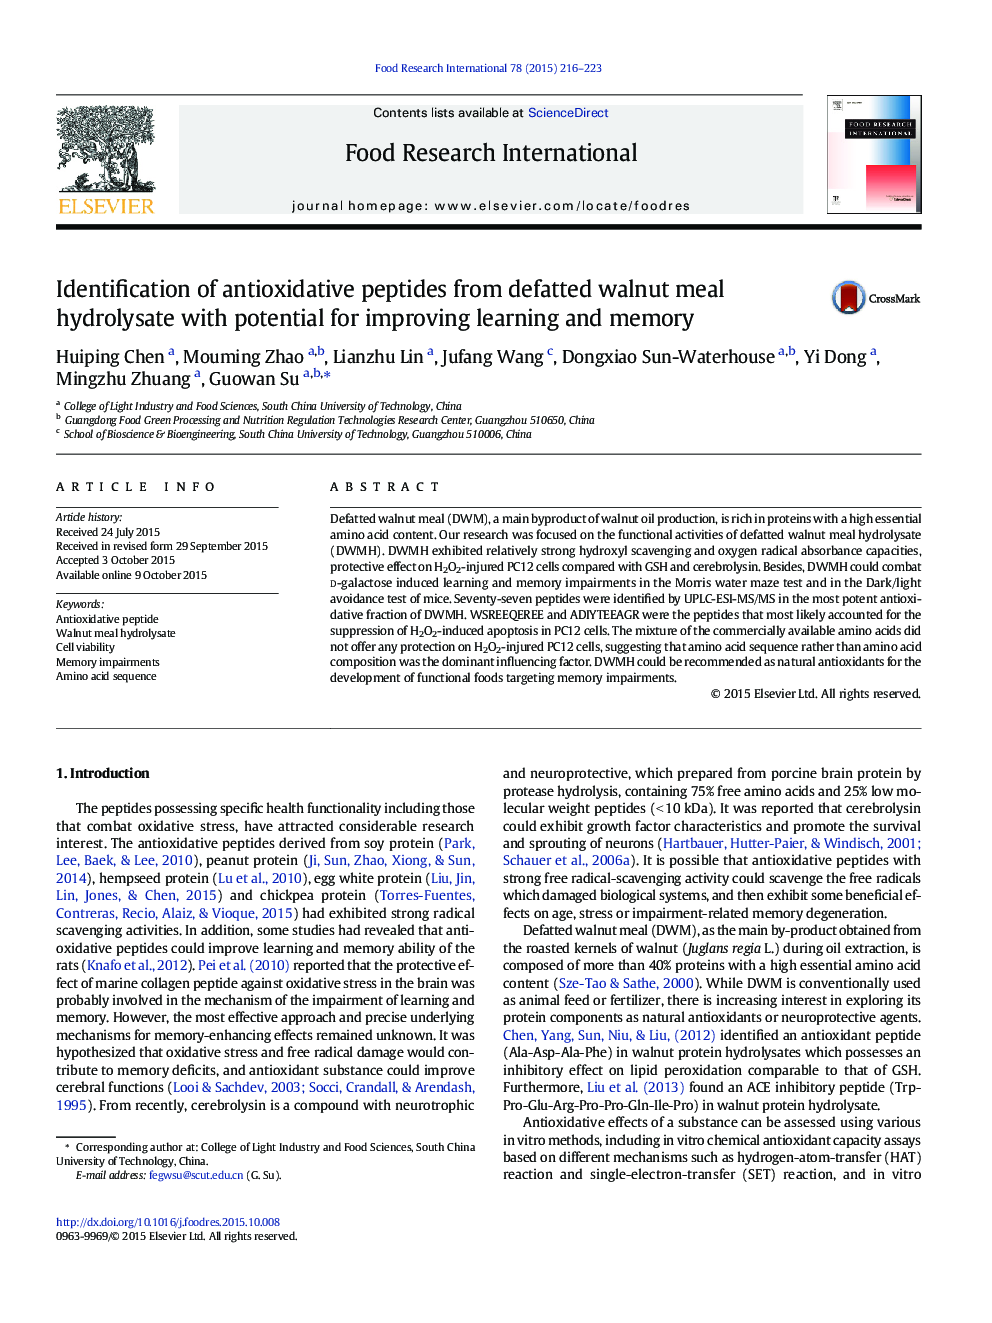 شناسایی پپتیدهای آنتی اکسیداتیو از هیدرولیزات وعده غذایی گردو نارس با امکان بهبود حافظه و یادگیری 